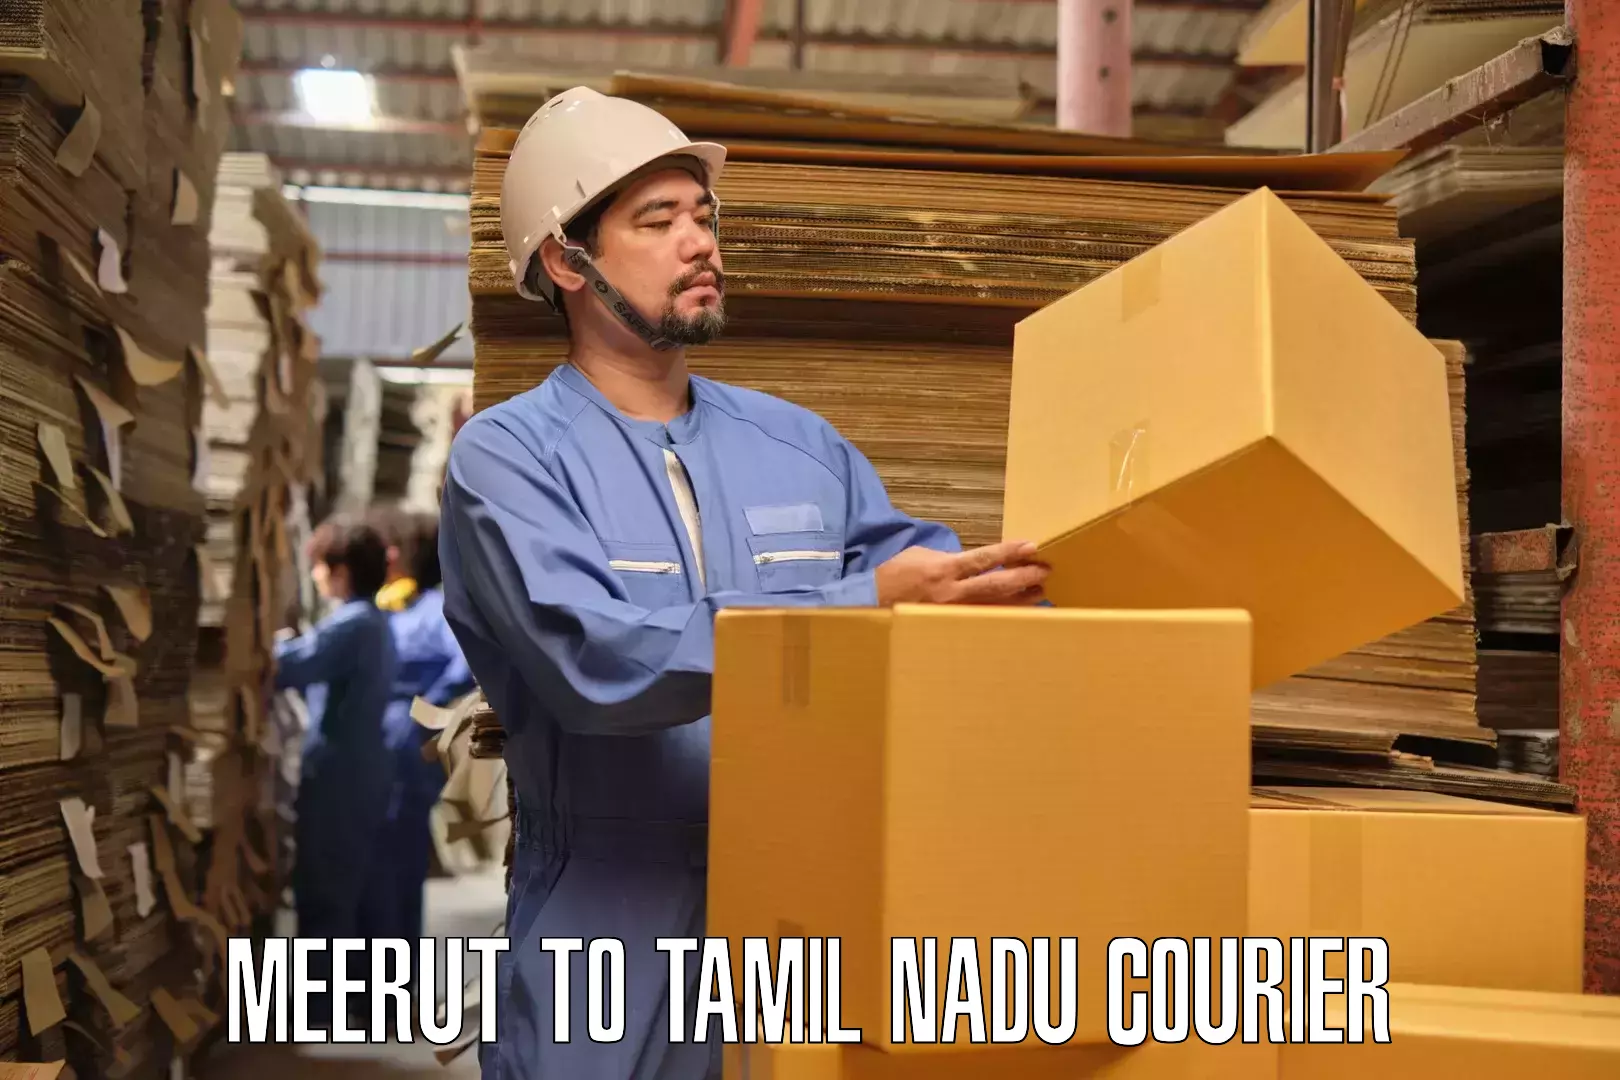 Household moving experts Meerut to Tiruturaipundi